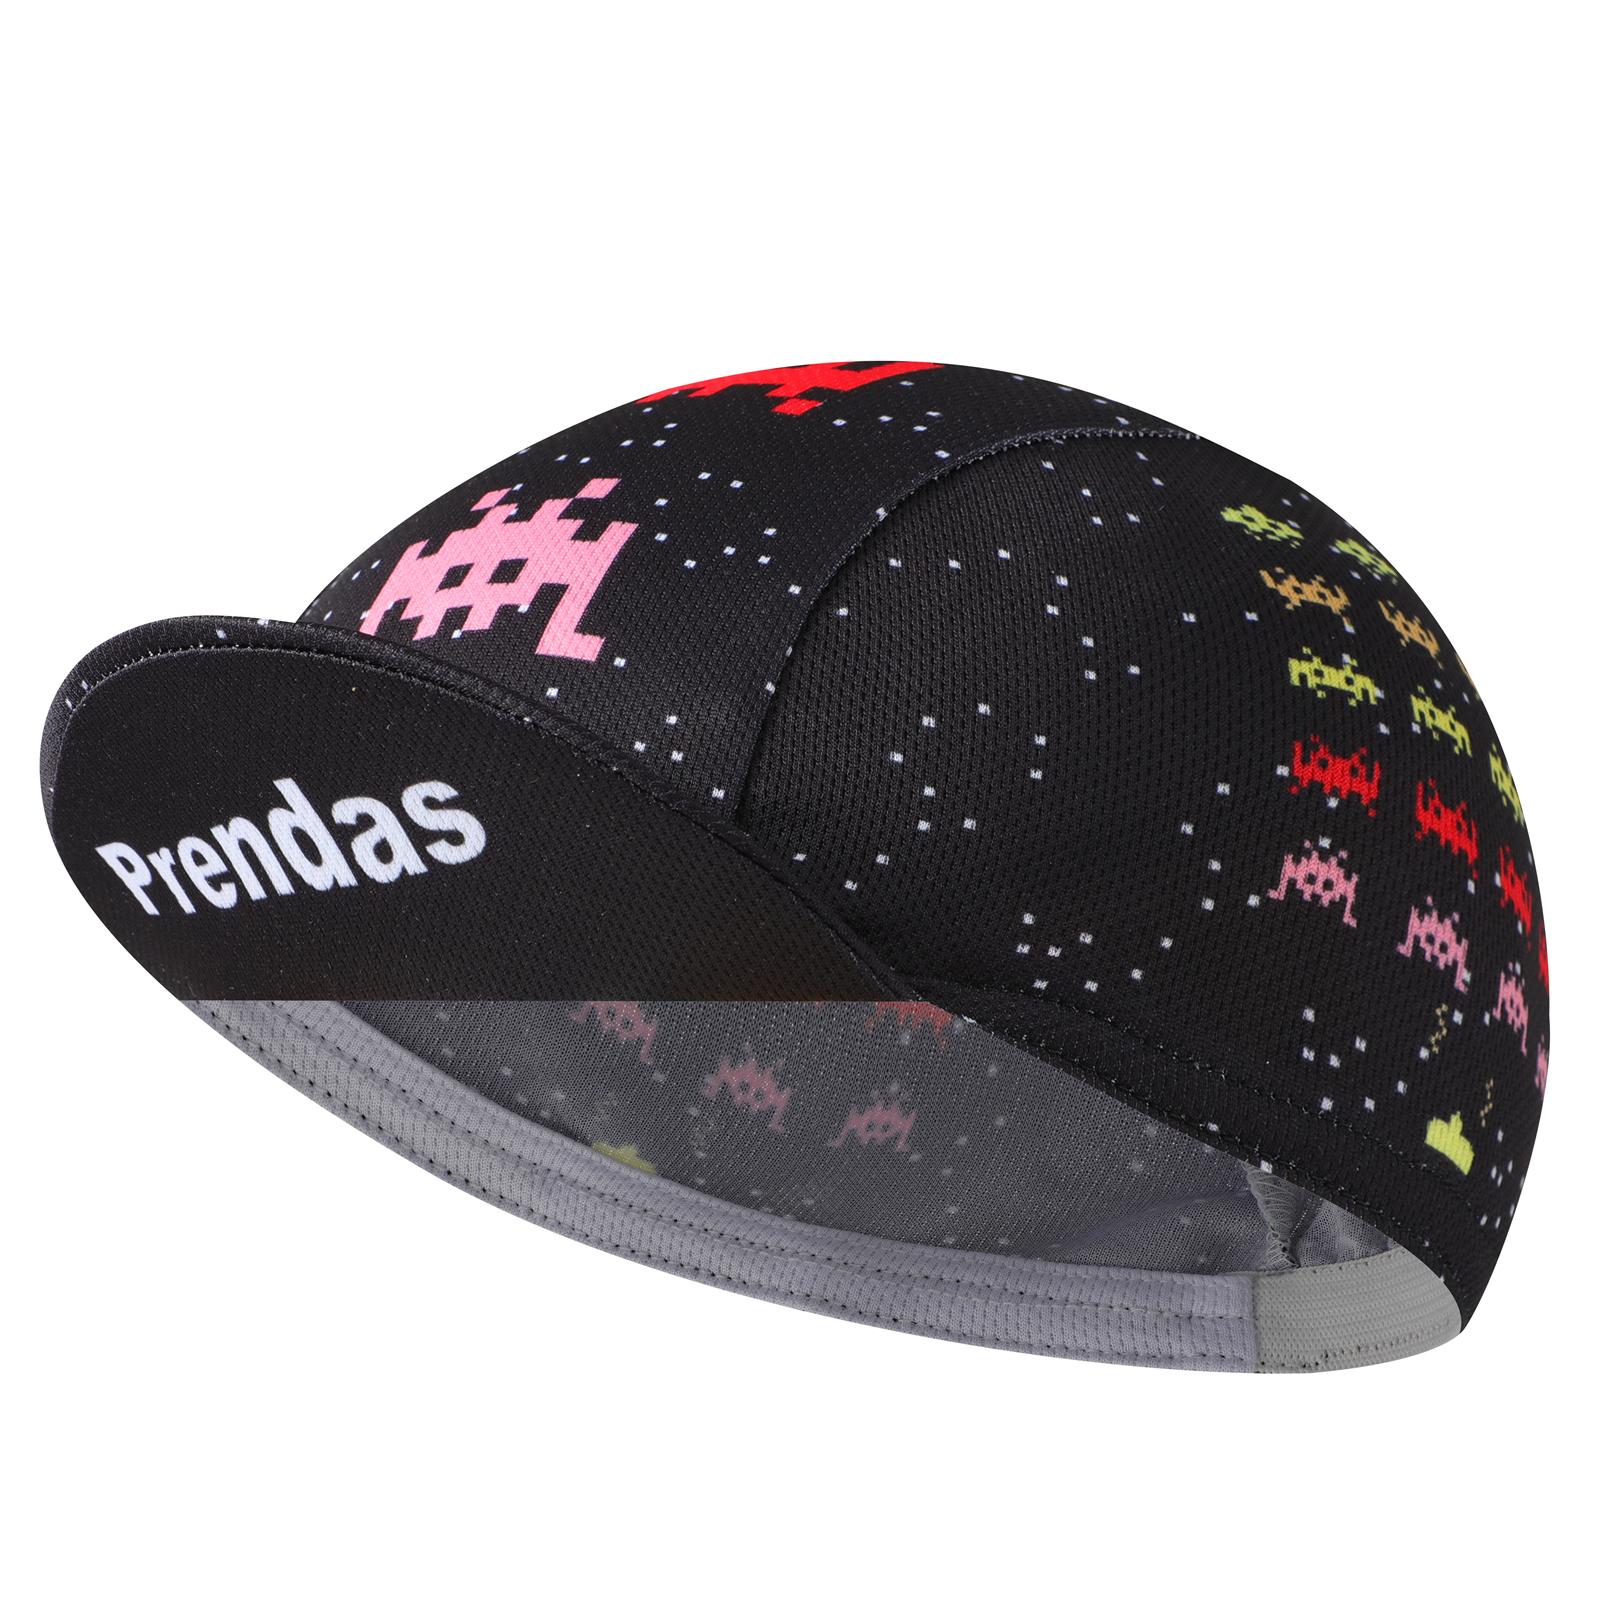 BikingBros Mũ bảo hiểm đi xe đạp màu đen - Mũ bảo hiểm có mũ đi xe đạp ngộ nghĩnh bằng polyester - Mũ bảo hiểm đi xe đạp lót thoáng khí Color: Funny 2 Hat Size: L